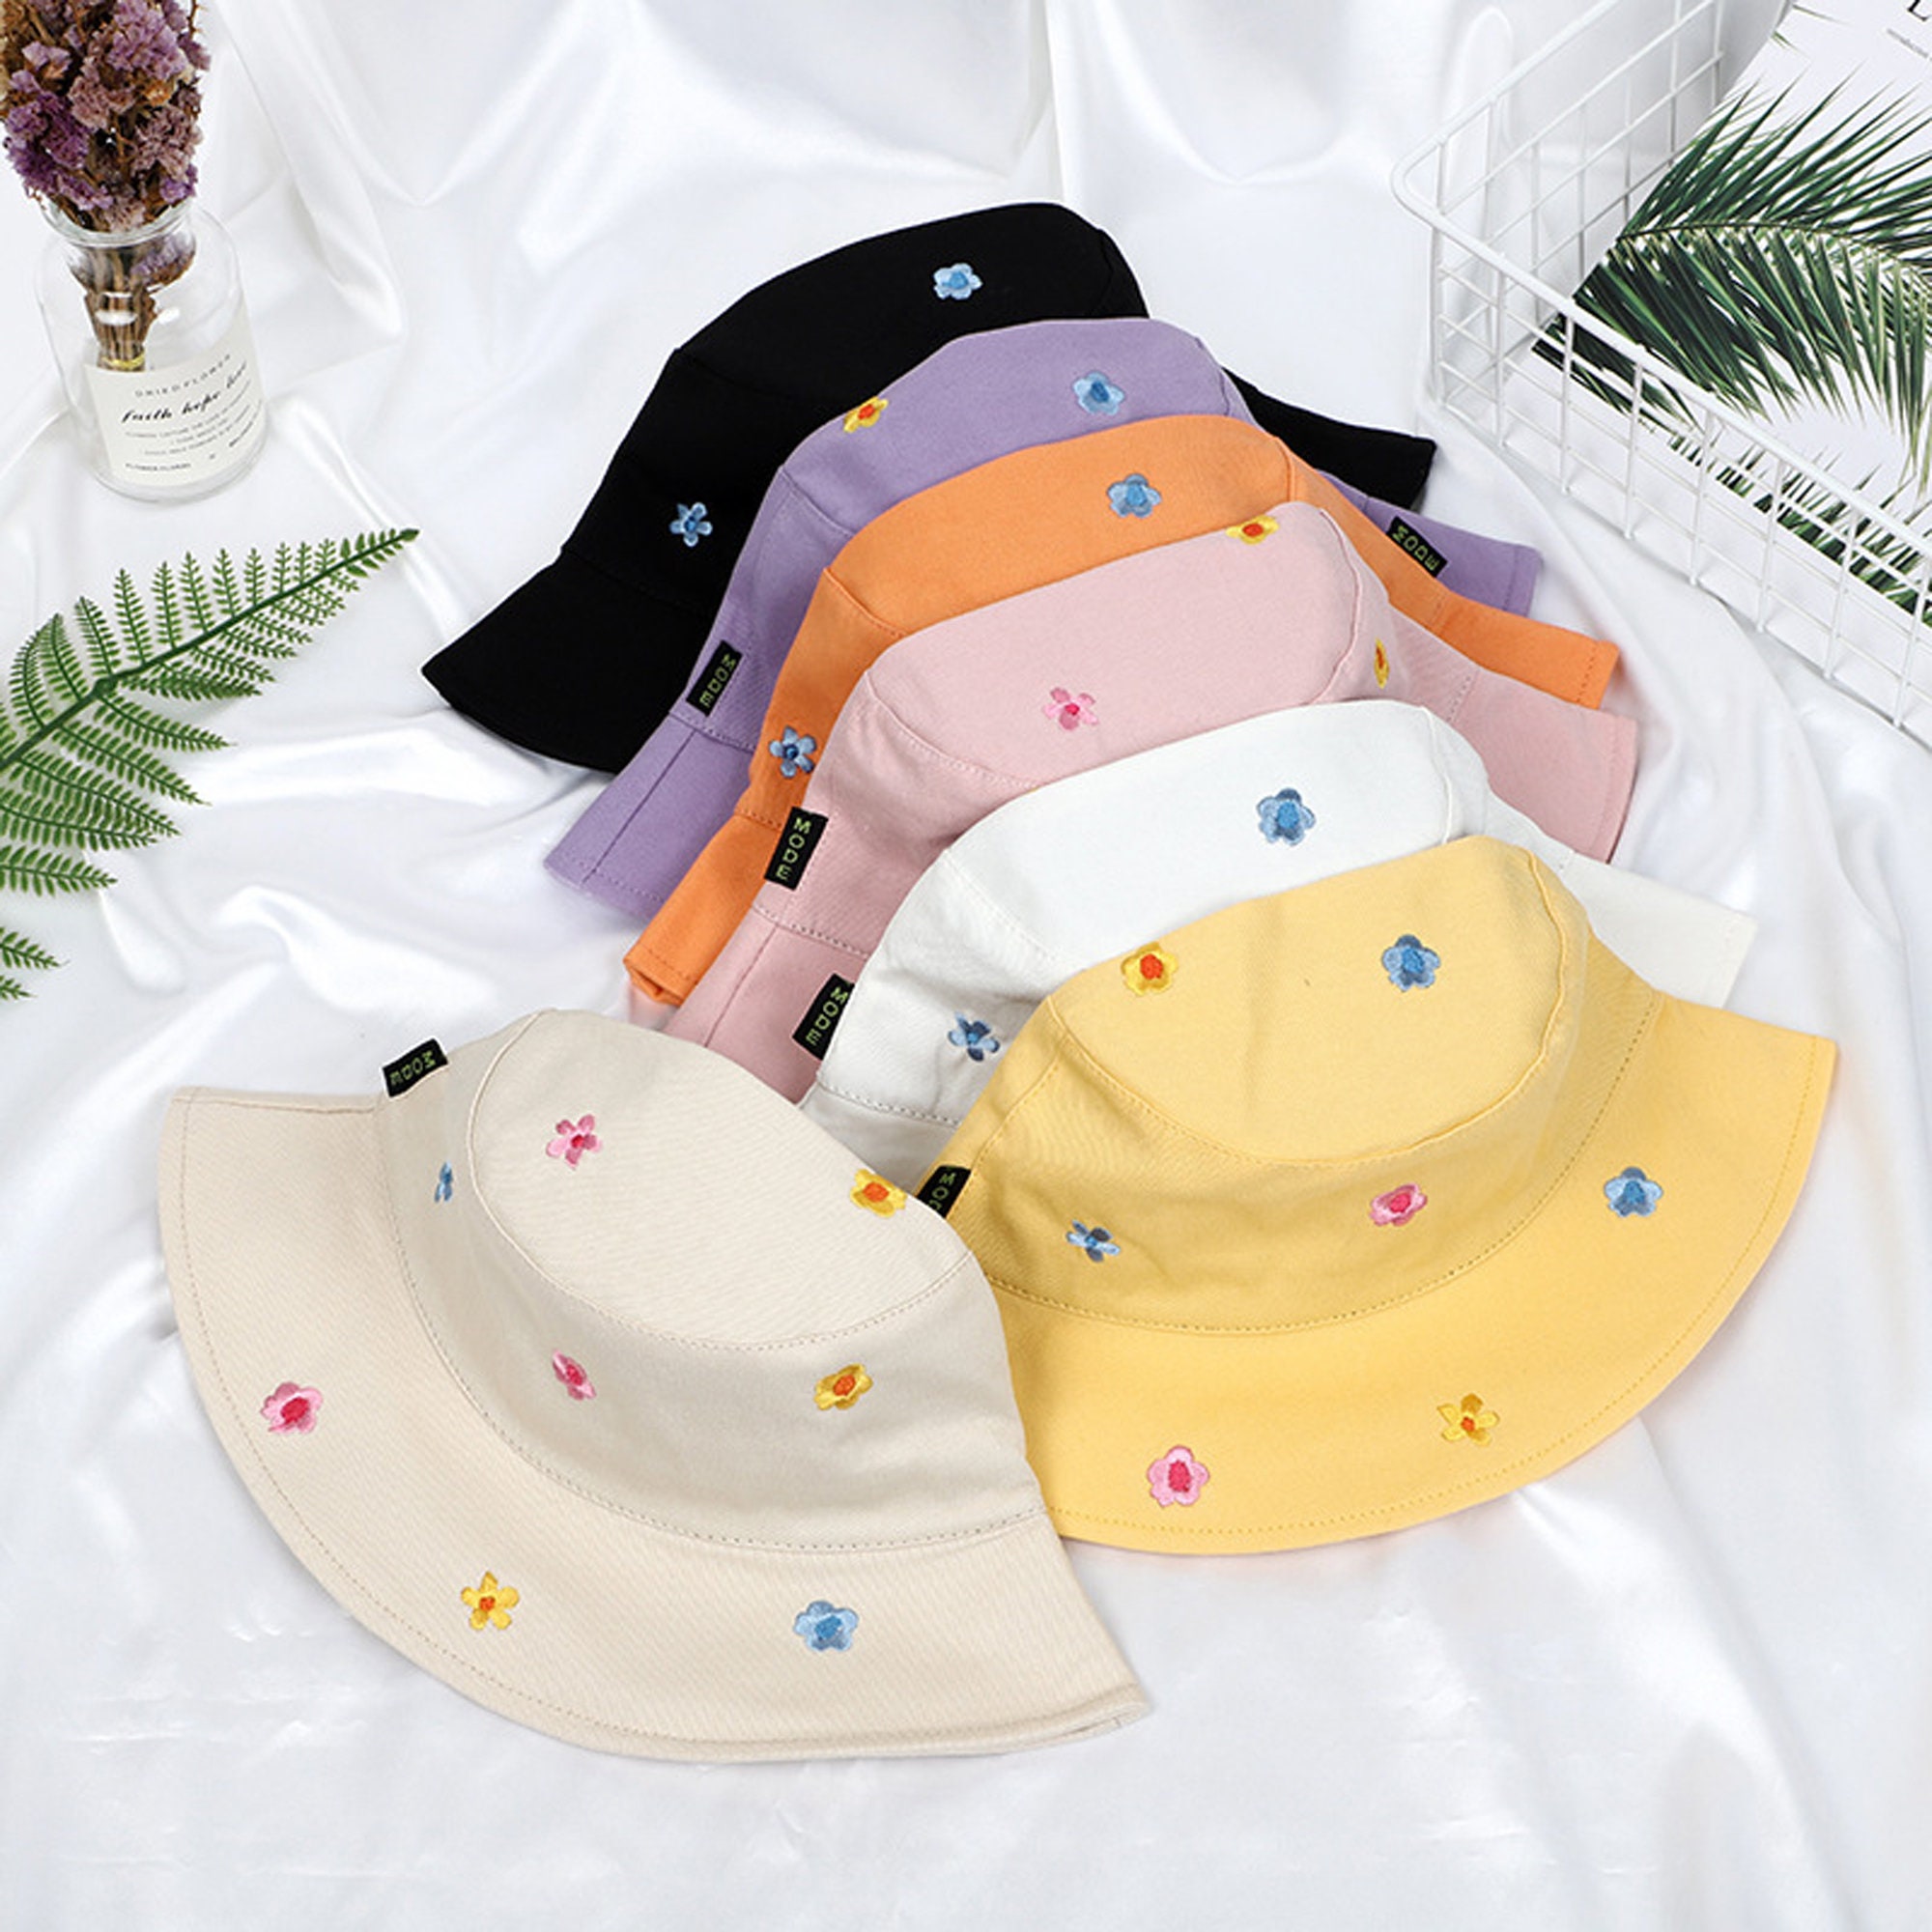 Fashion Visor Hat – KishaRose Treasures